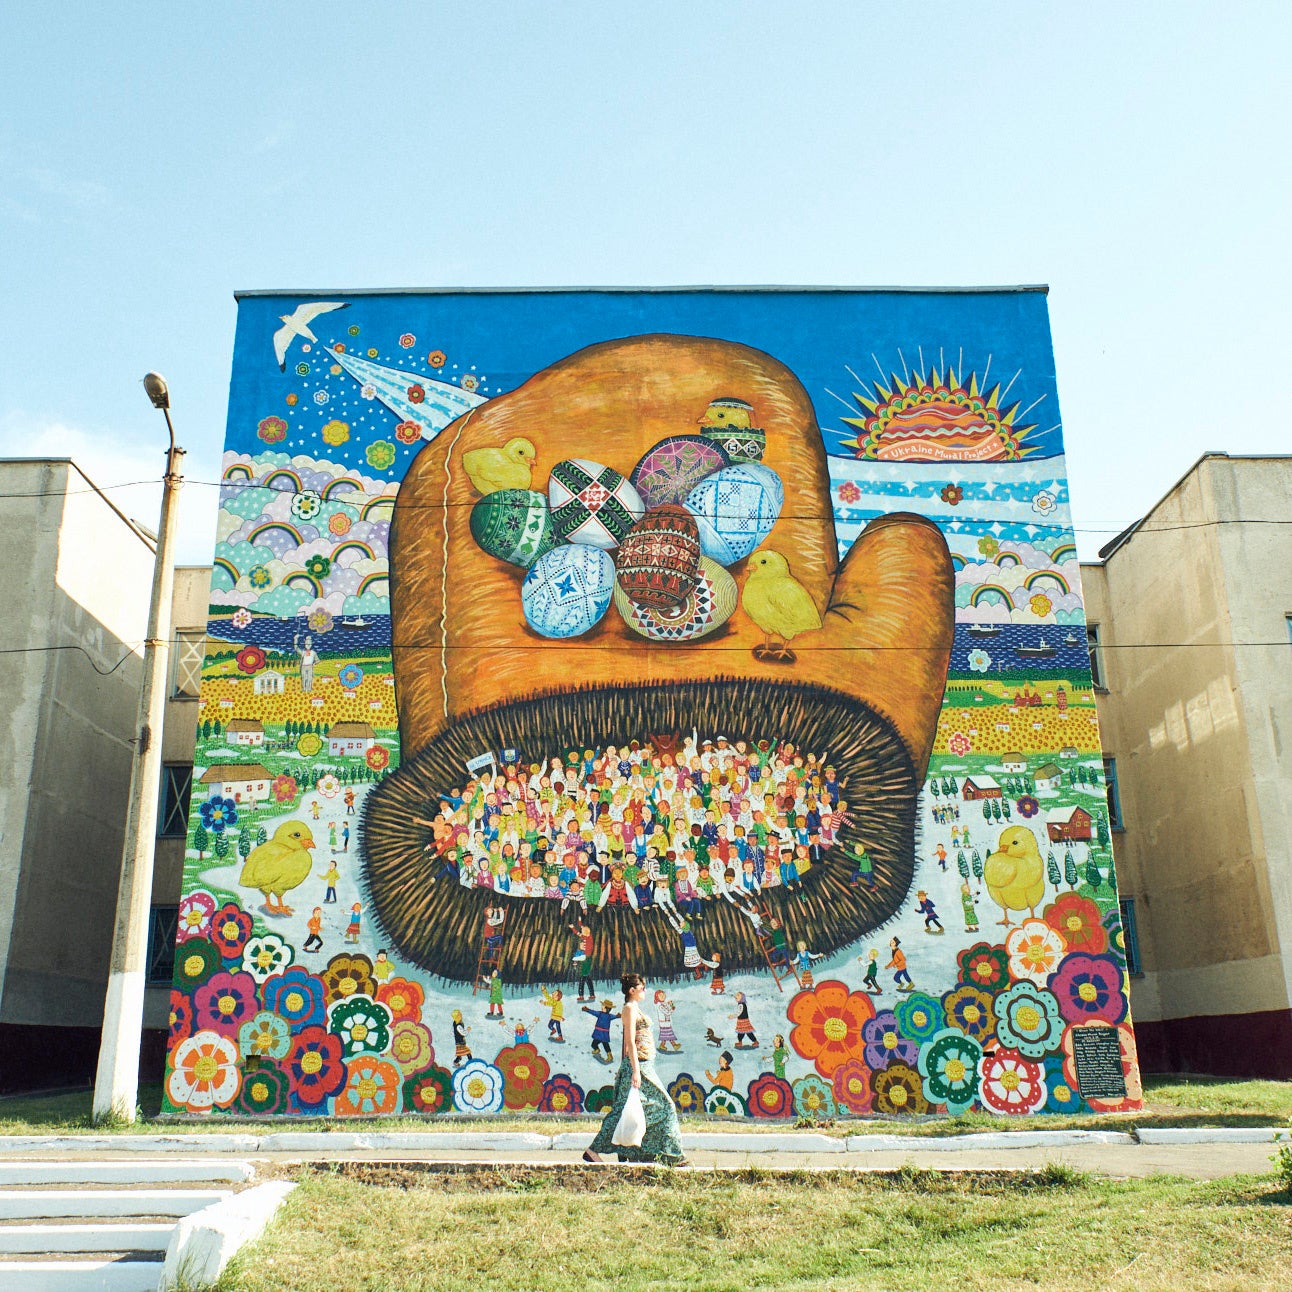 【Columbia】アーティスト ミヤザキケンスケさんが描いたマリウポリの壁画をプリントした『チャリティ T シャツ』応援購入サービス「Makuake」にて6月13日(月)より販売のサブ画像3